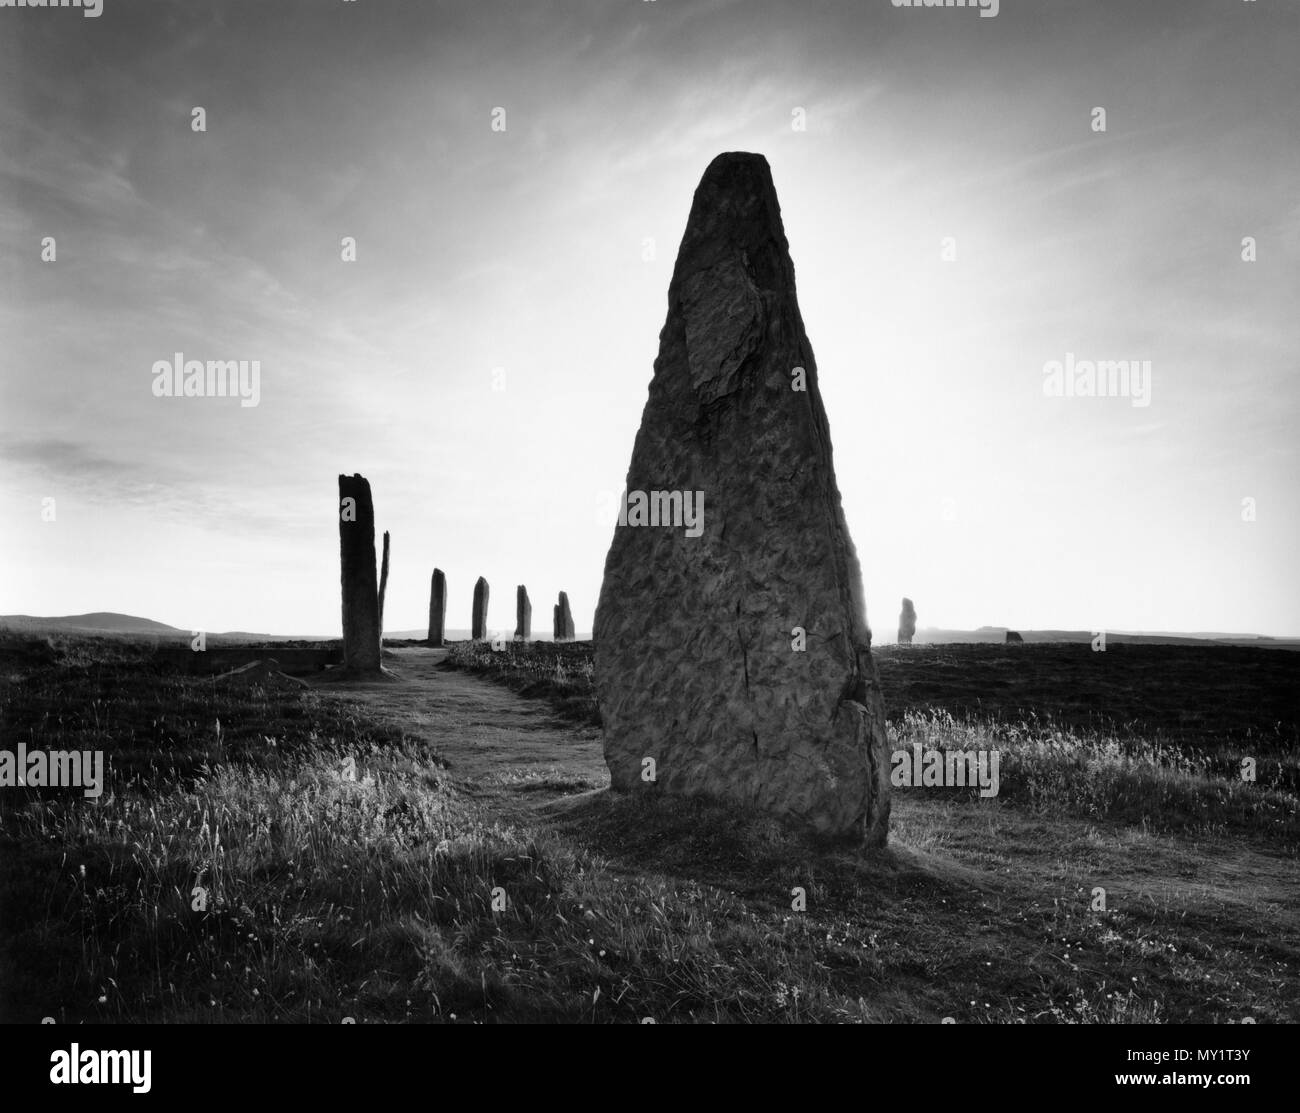 Voir SW au NW de l'arc de l'anneau de Shetlands (Brogar) cercle de pierres néolithiques & henge monument sur la Ness de Shetlands, Mainland, Orkney, au Royaume-Uni. Banque D'Images